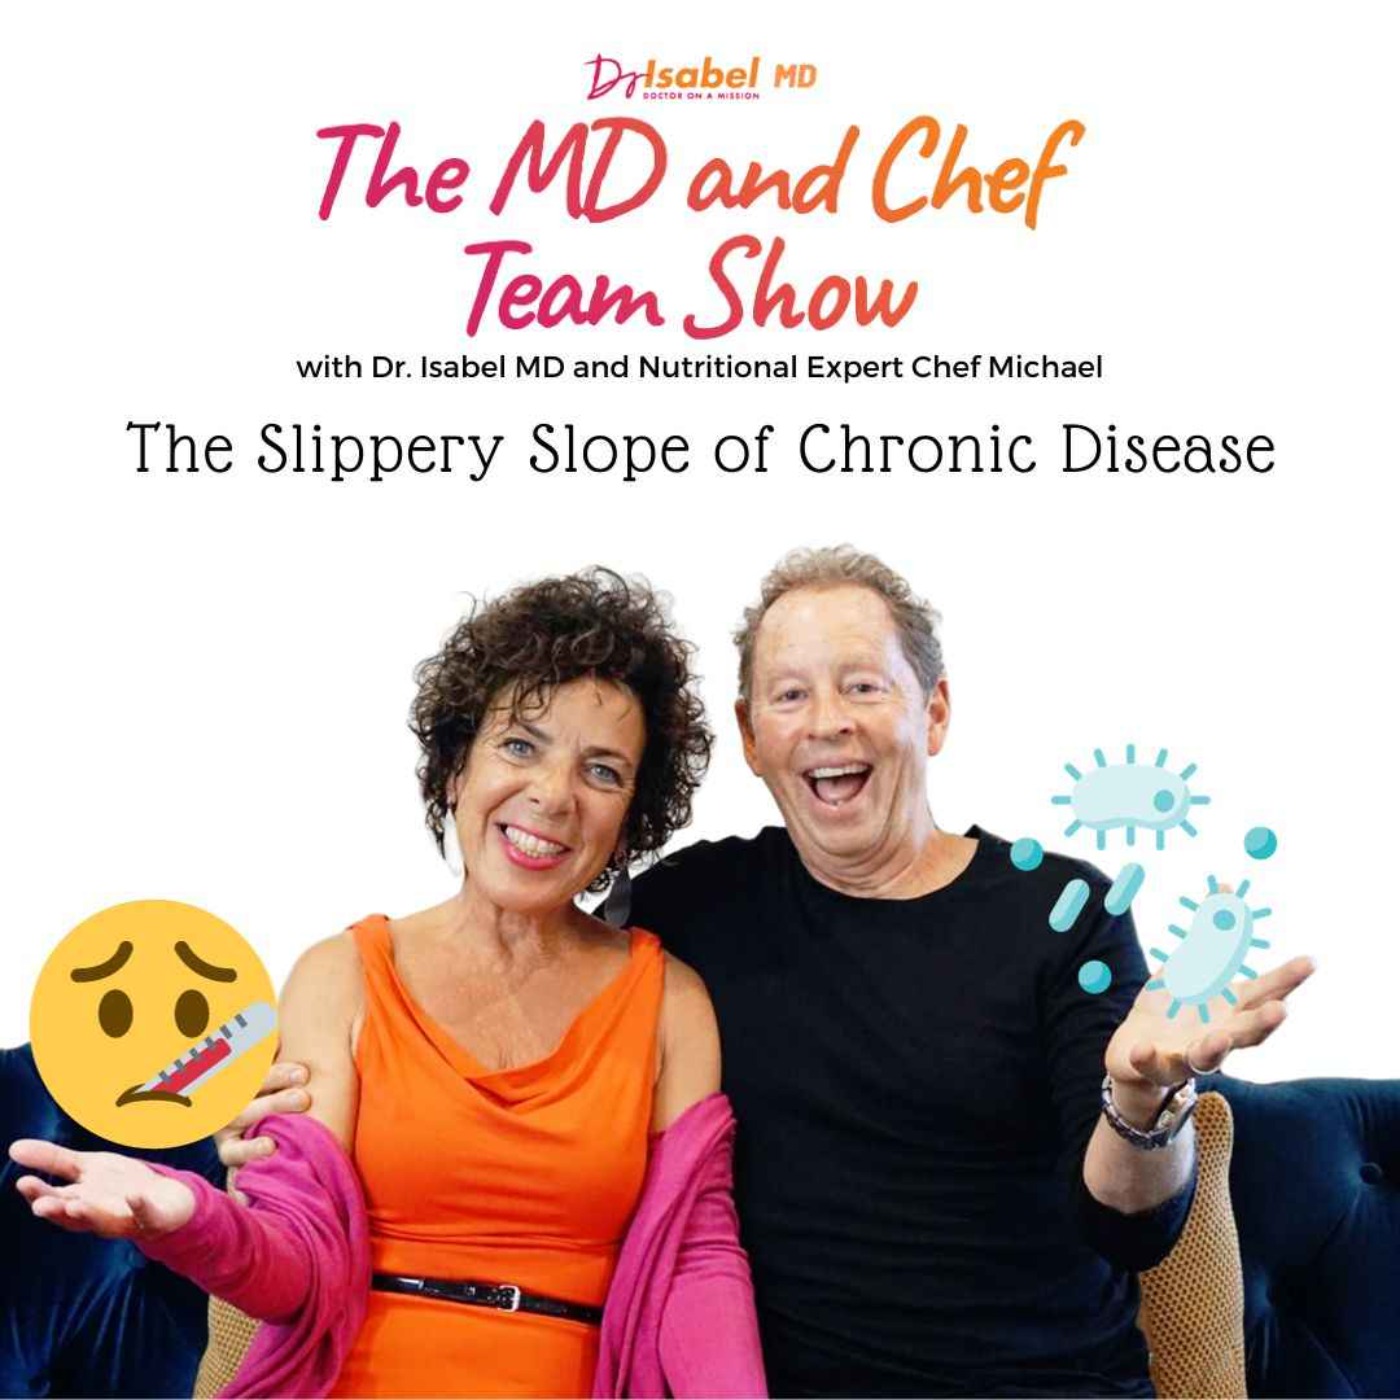 The Slippery Slope of Chronic Disease